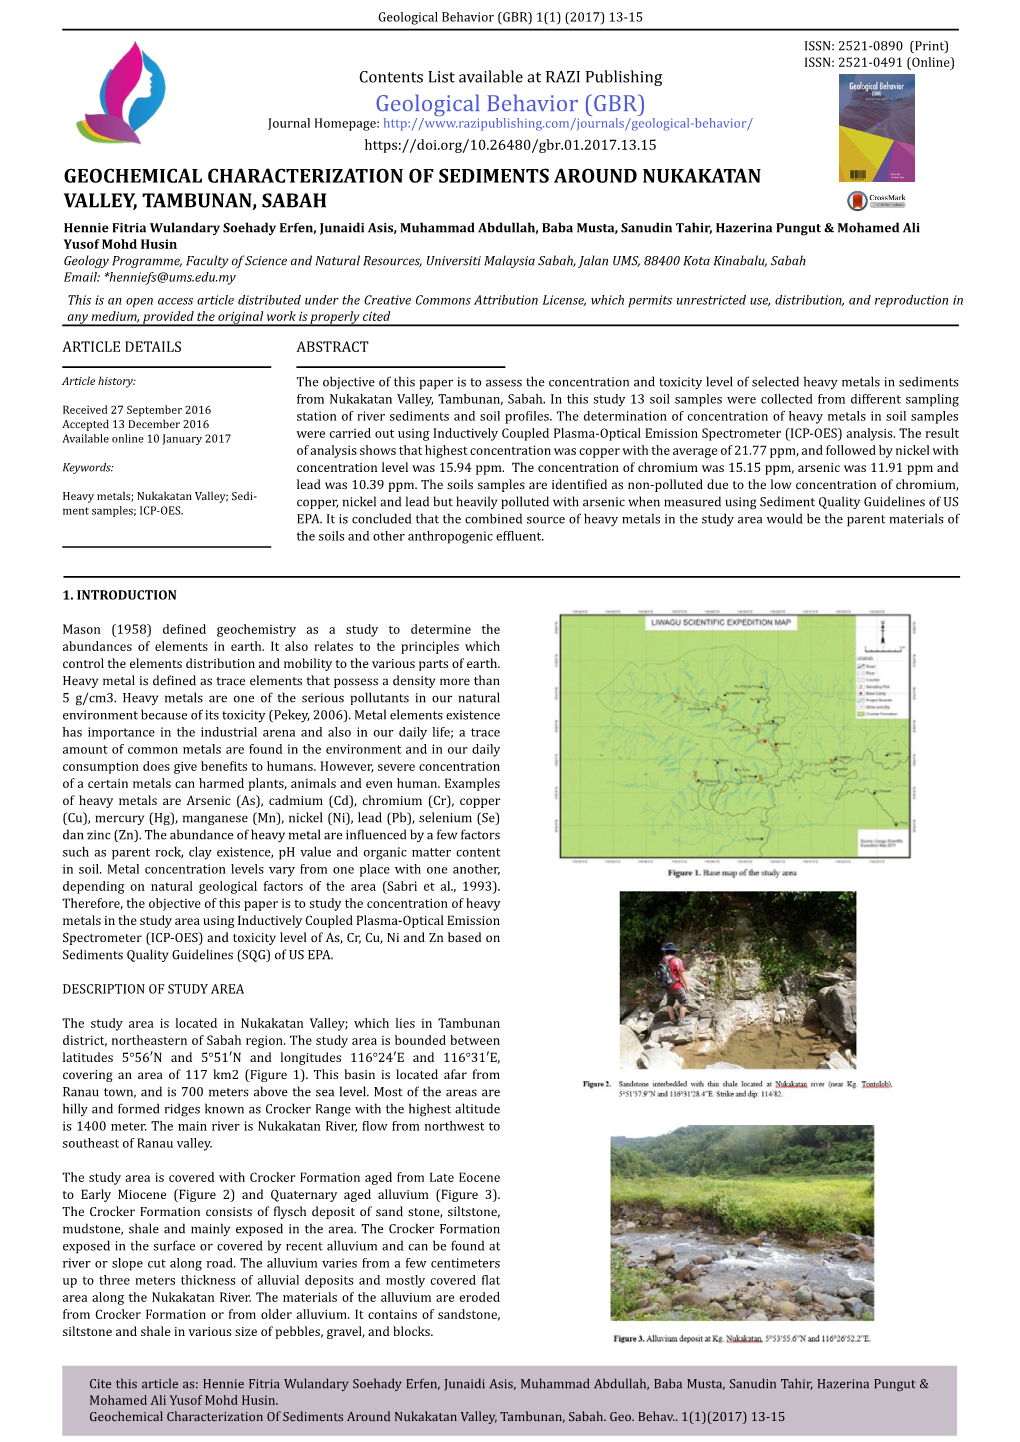 Geochemical Characterization of Sediments Around Nukakatan Valley, Tambunan, Sabah